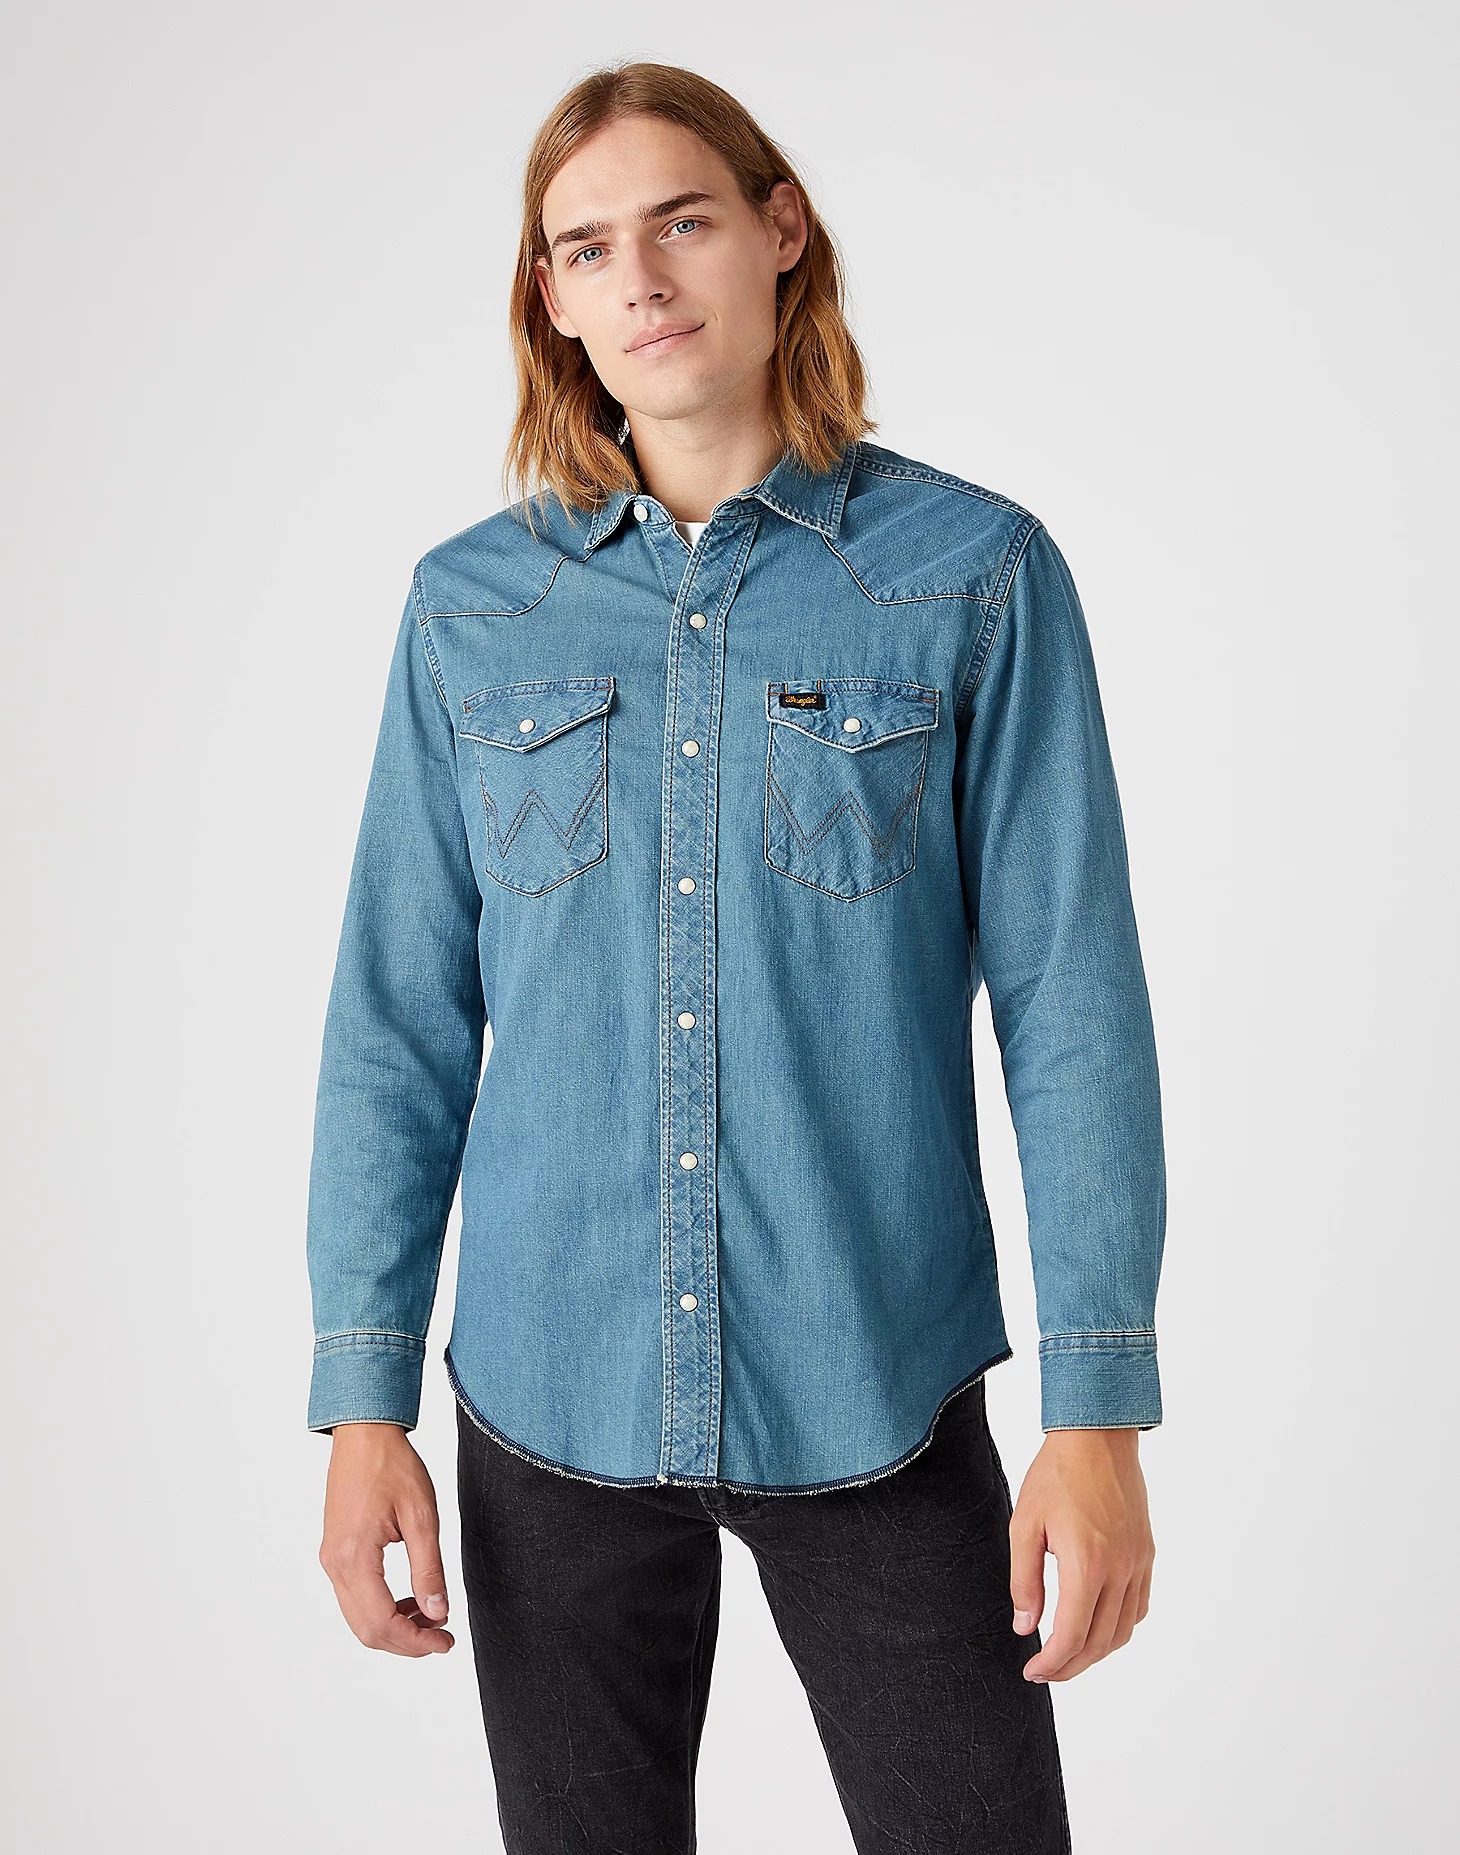 Джинсовая рубашка мужская Wrangler W5D1BKH99 голубая XL